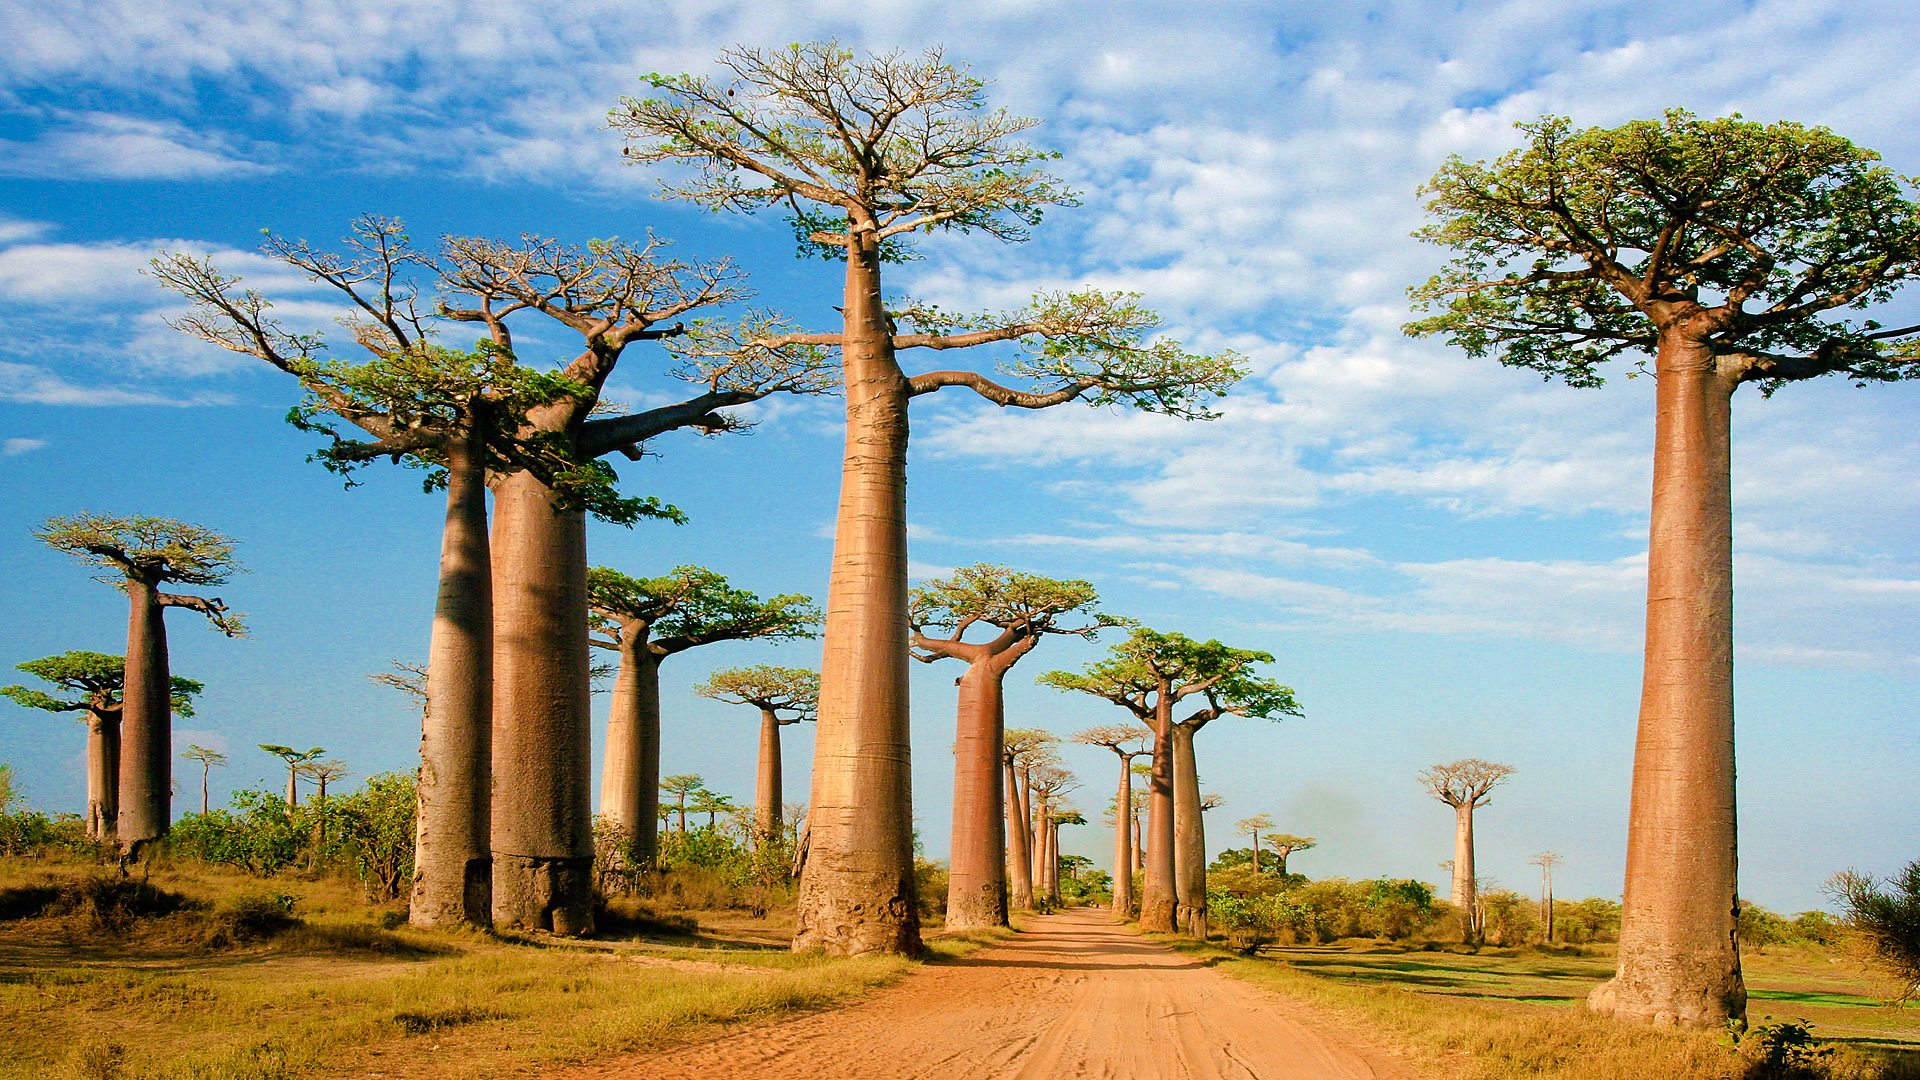 BBC Radio 4 Histories, Baobab reasons to love the baobab tree